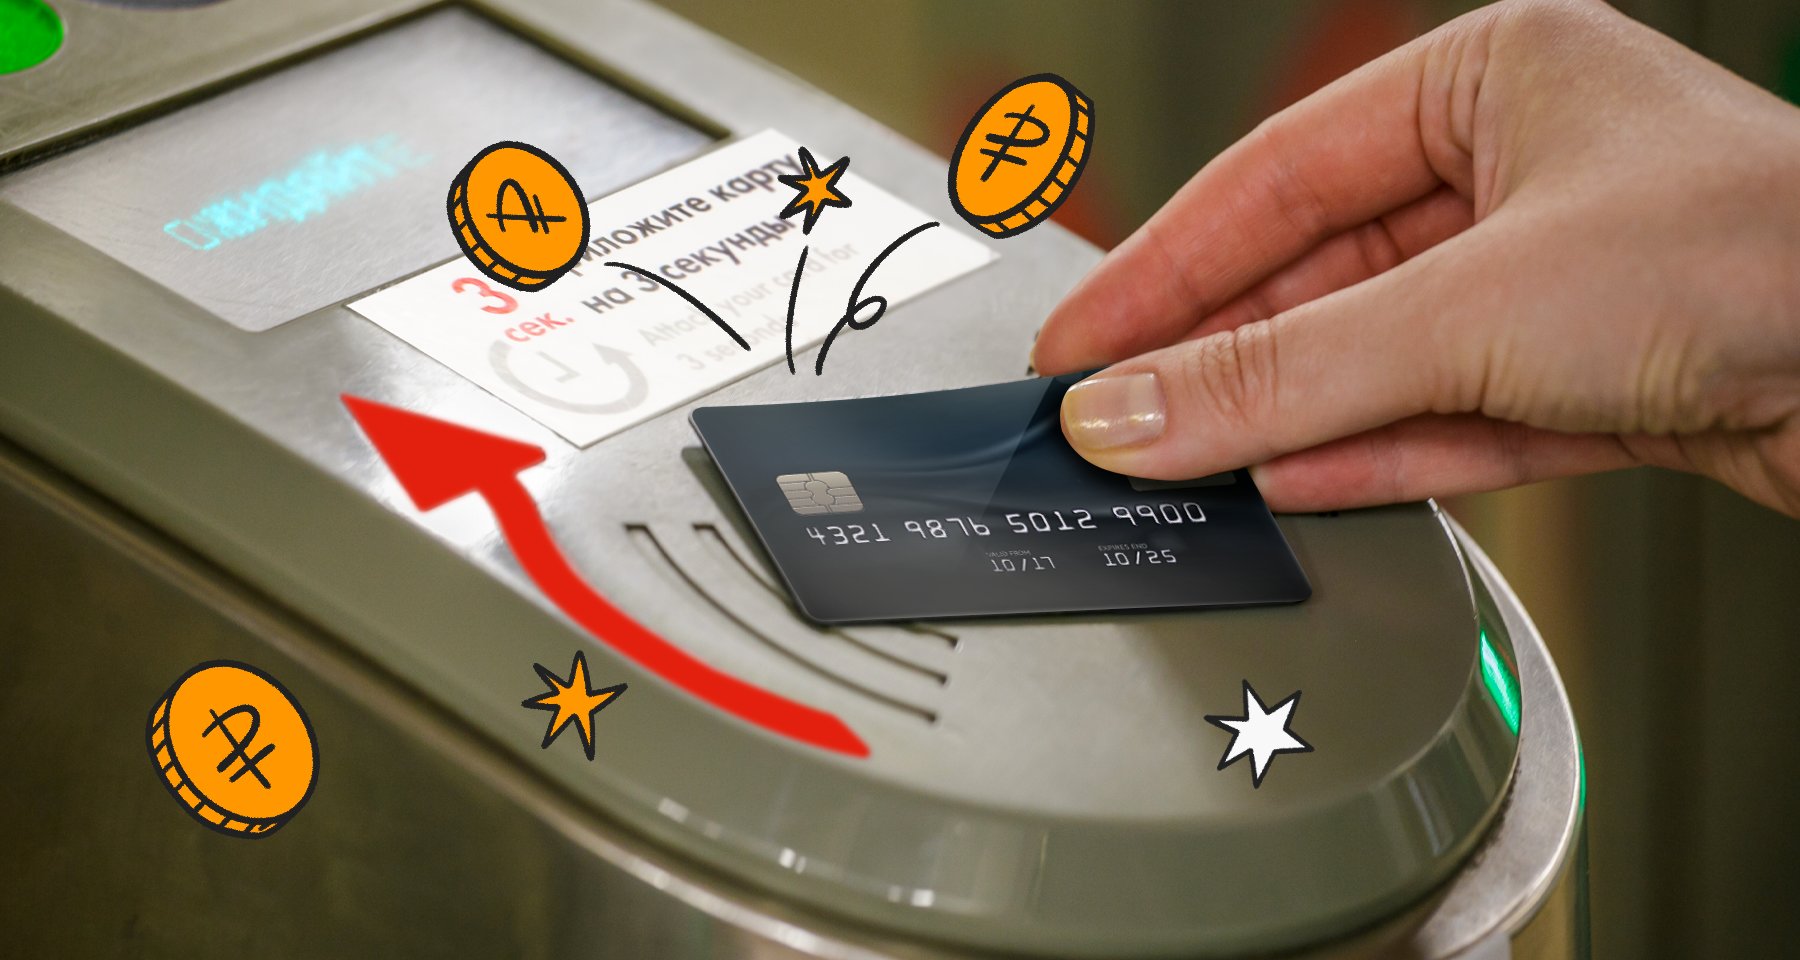 Оплата проезда банковской картой: безопасно ли давать ее контролерам, какие есть нюансы и как сэкономить